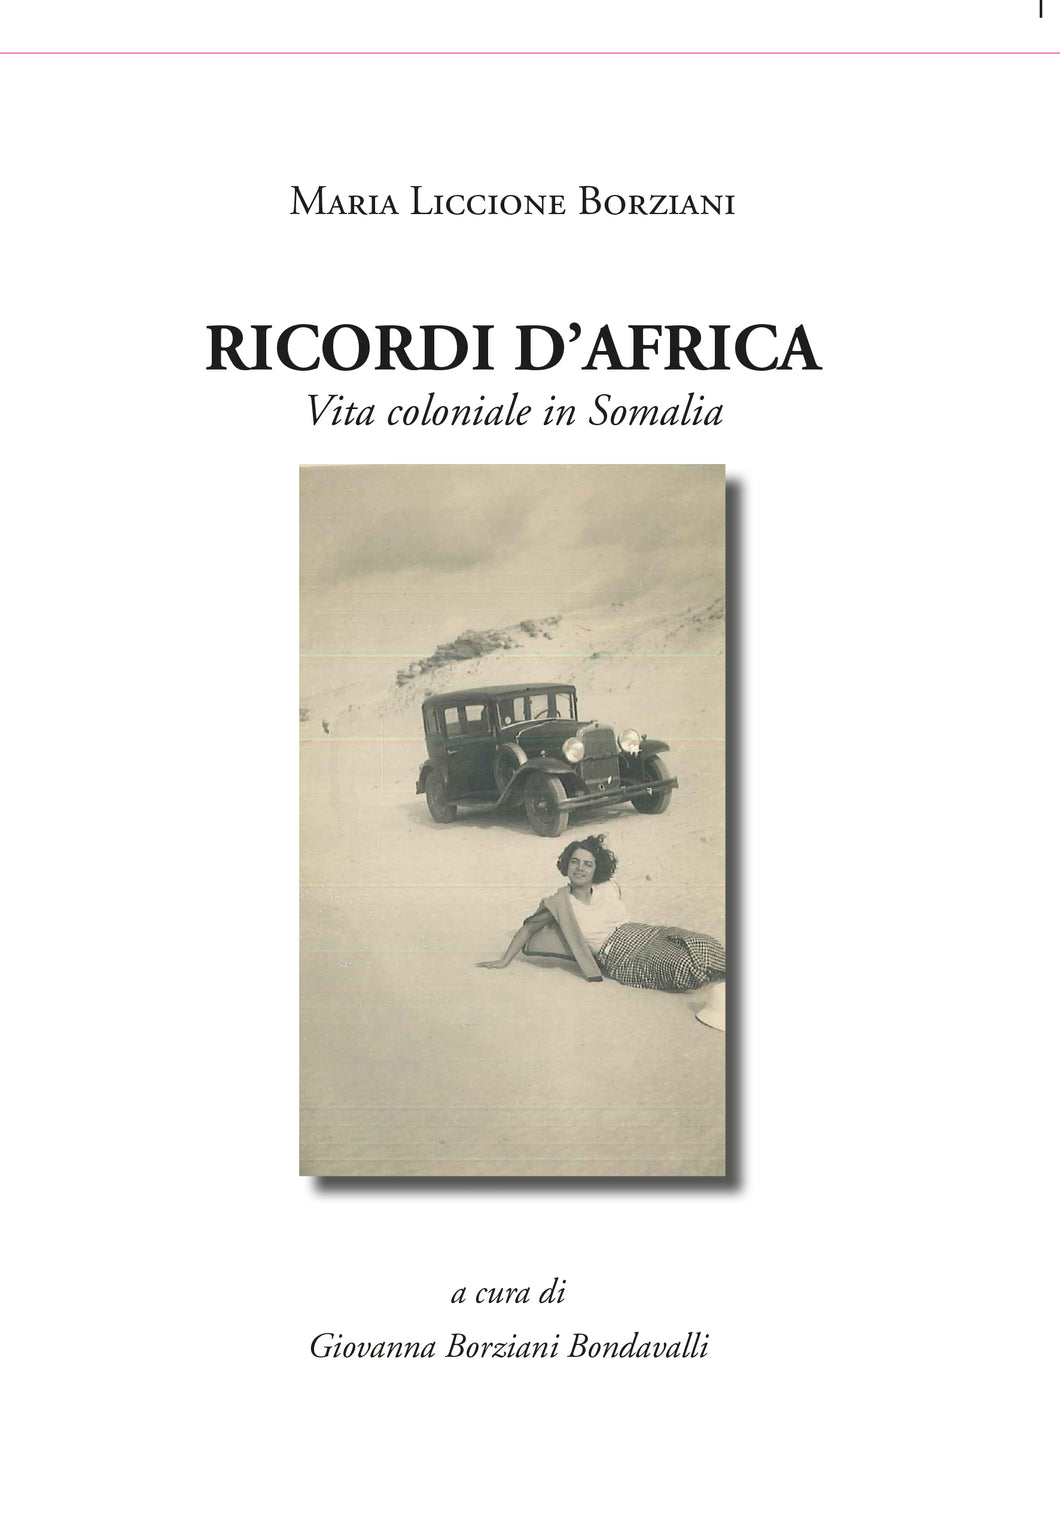 EBOOK - Maria Liccione Borziani - RICORDI D’AFRICA, Vita  in Somalia - Edizioni San Lorenzo